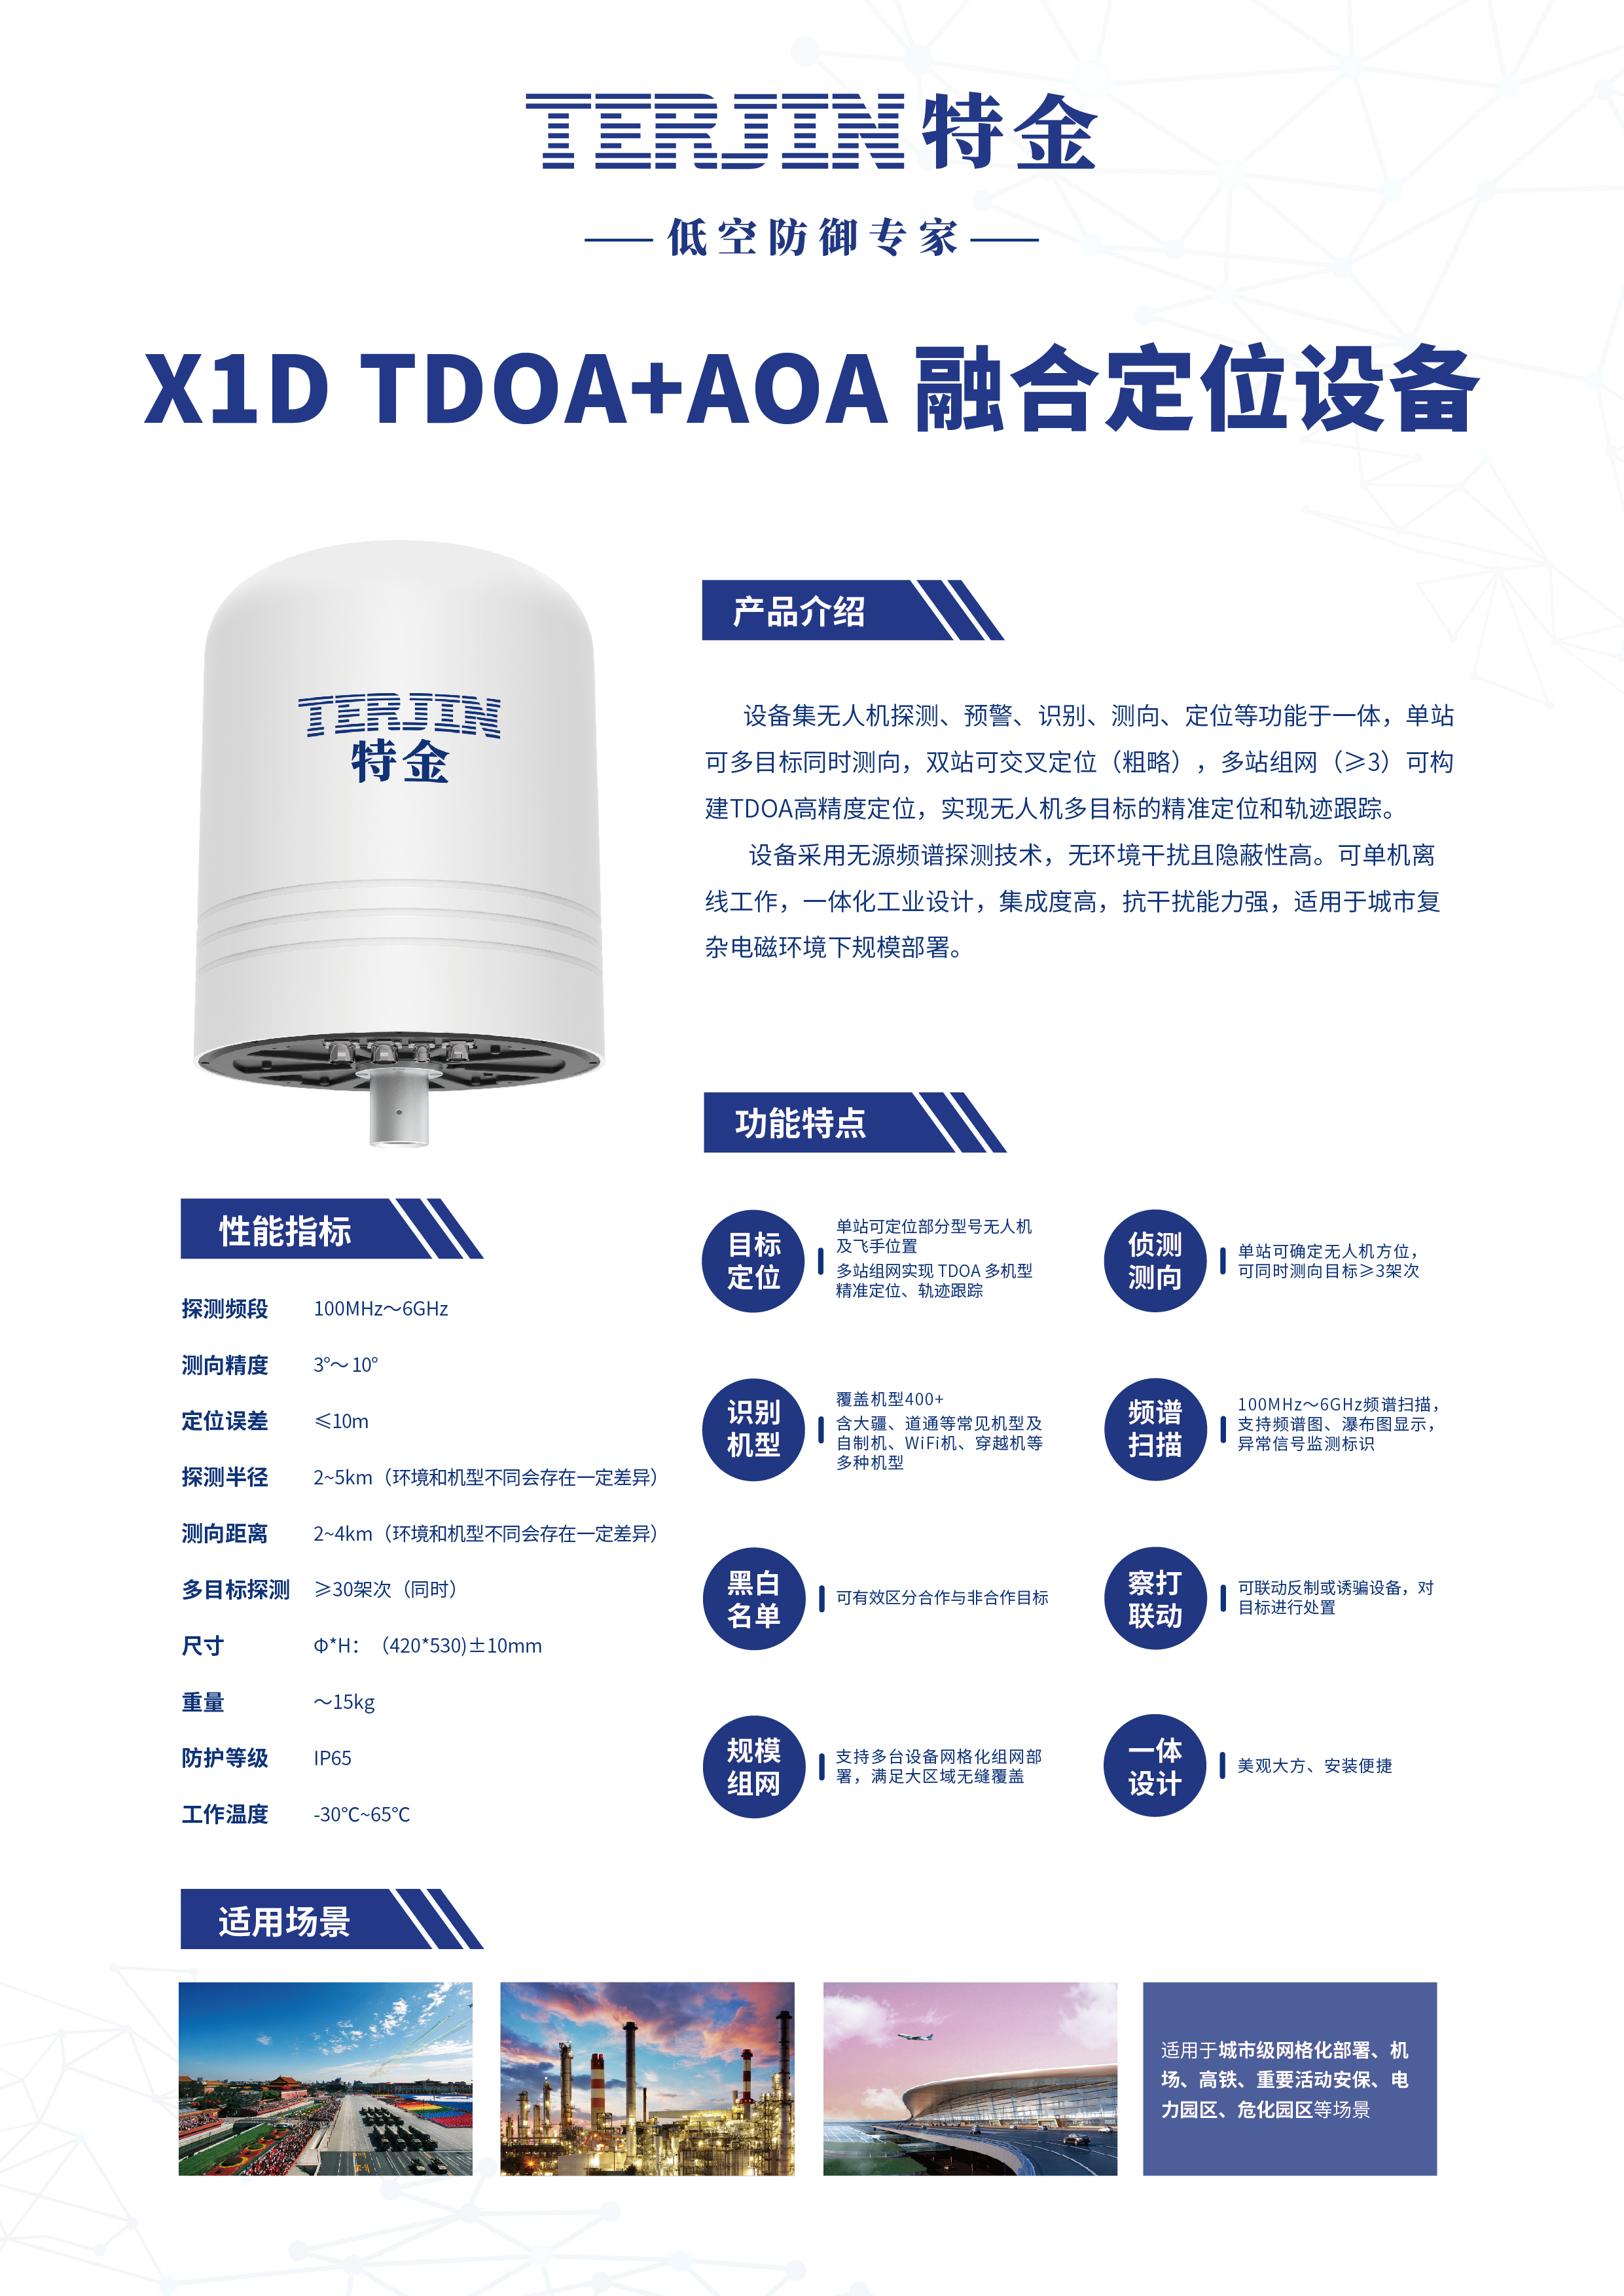 【新品首发】TDOA+AOA 融合定位设备（型号X1D）